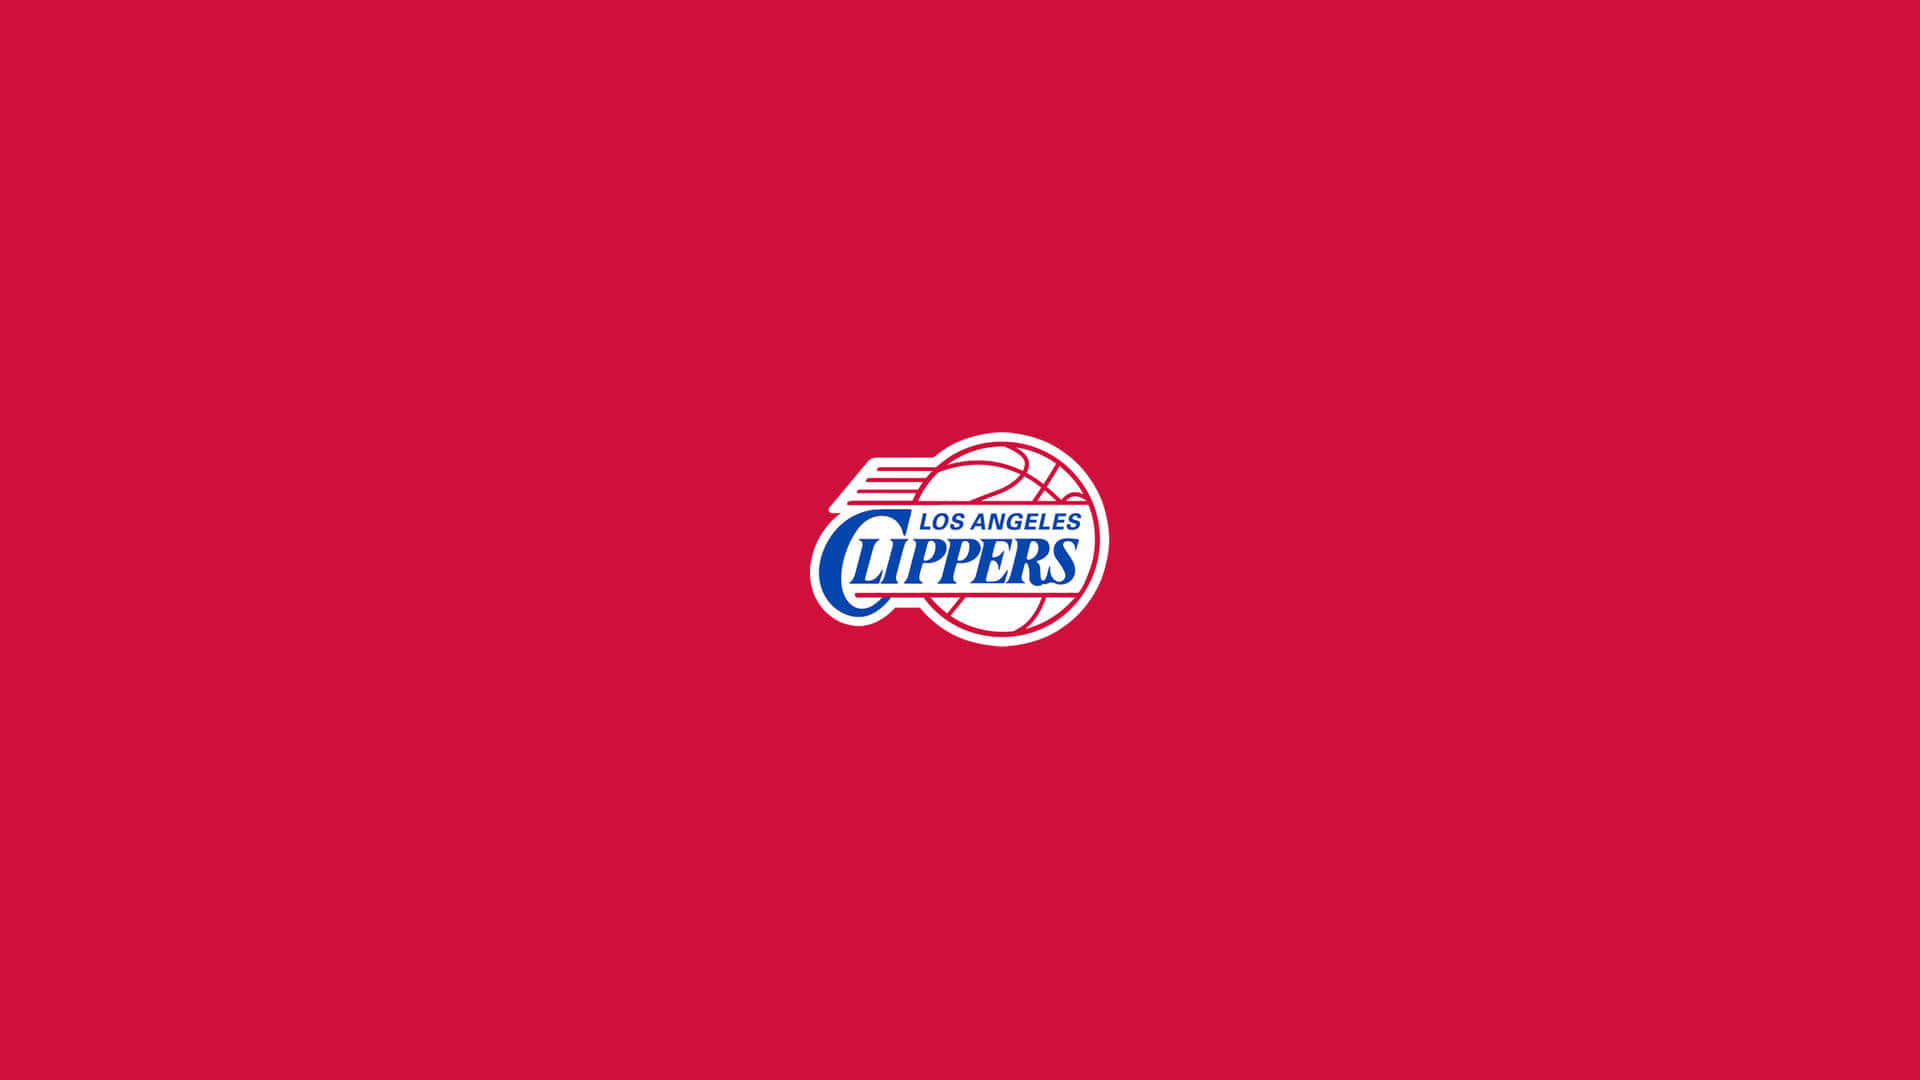 Logominimale In Rosso Della Squadra Di Basket Nba La Clippers Sfondo